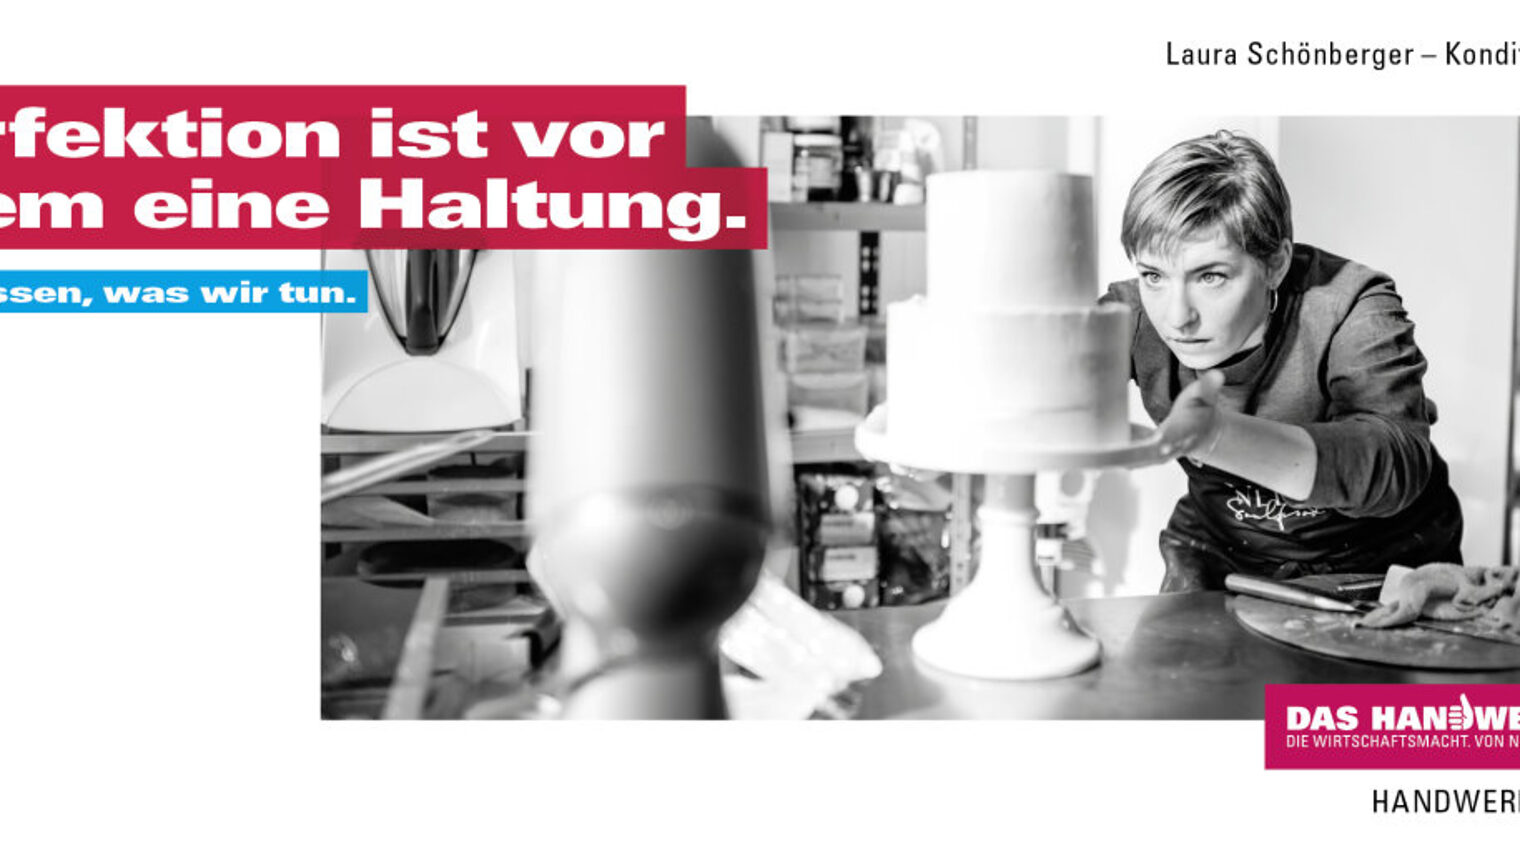 Werbebild in schwarz-weiß einer jungen Konditorin, die an zweistöckiger Torte arbeitet. Werbetext und Logo in weiß auf rot.